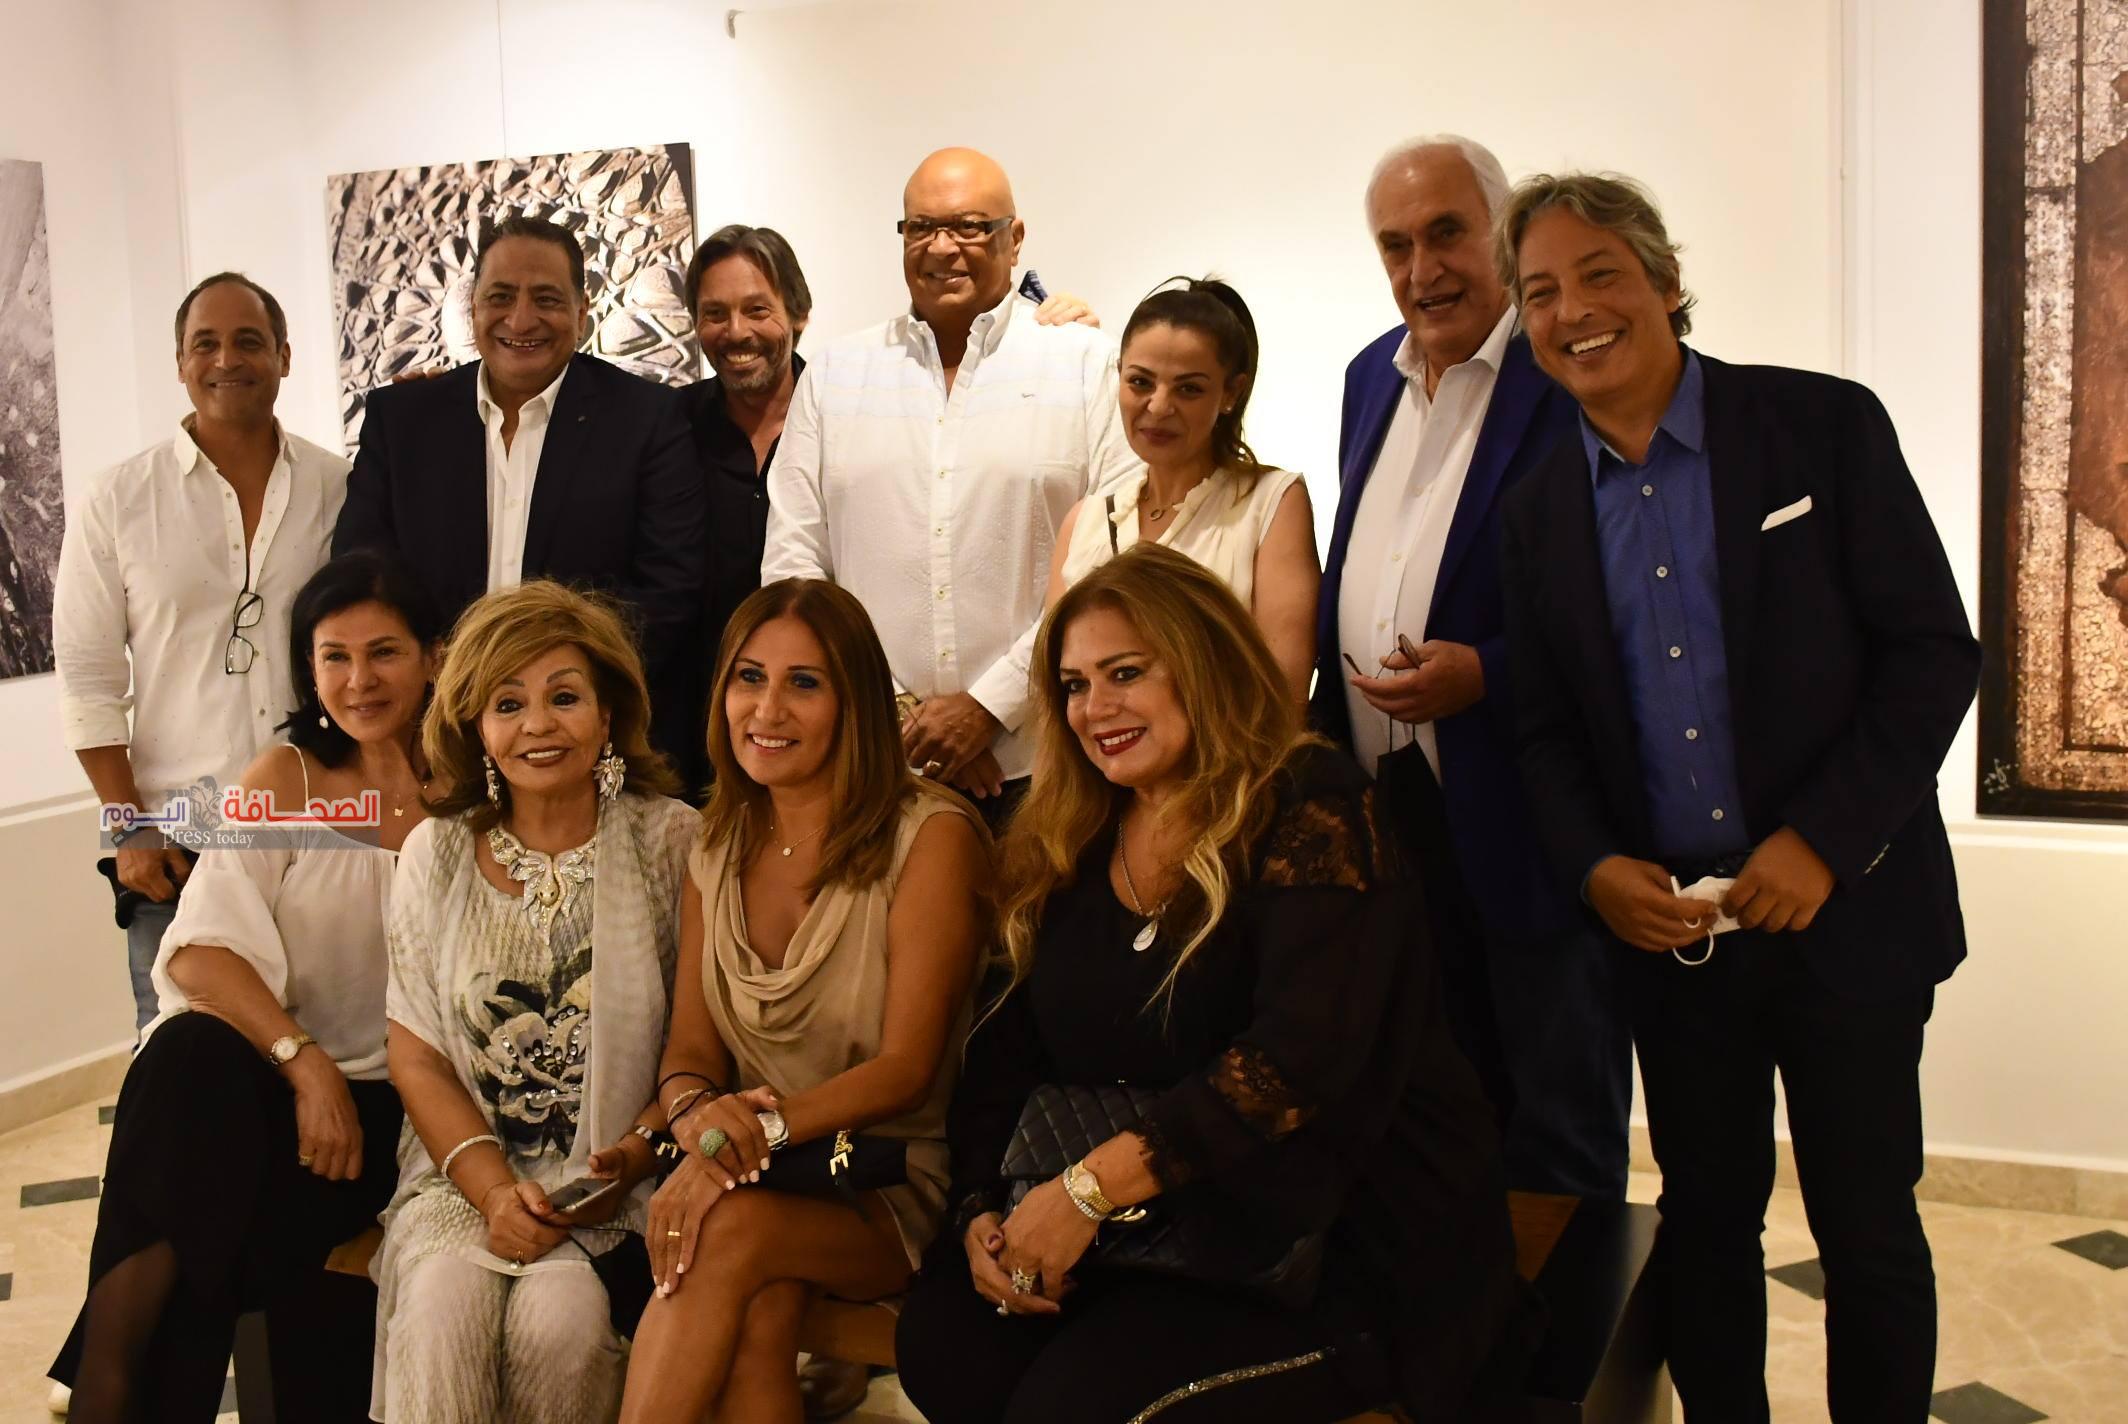 إفتتاح معرض كيميت للفنانين “وائل عابد وأيمن طاهر”